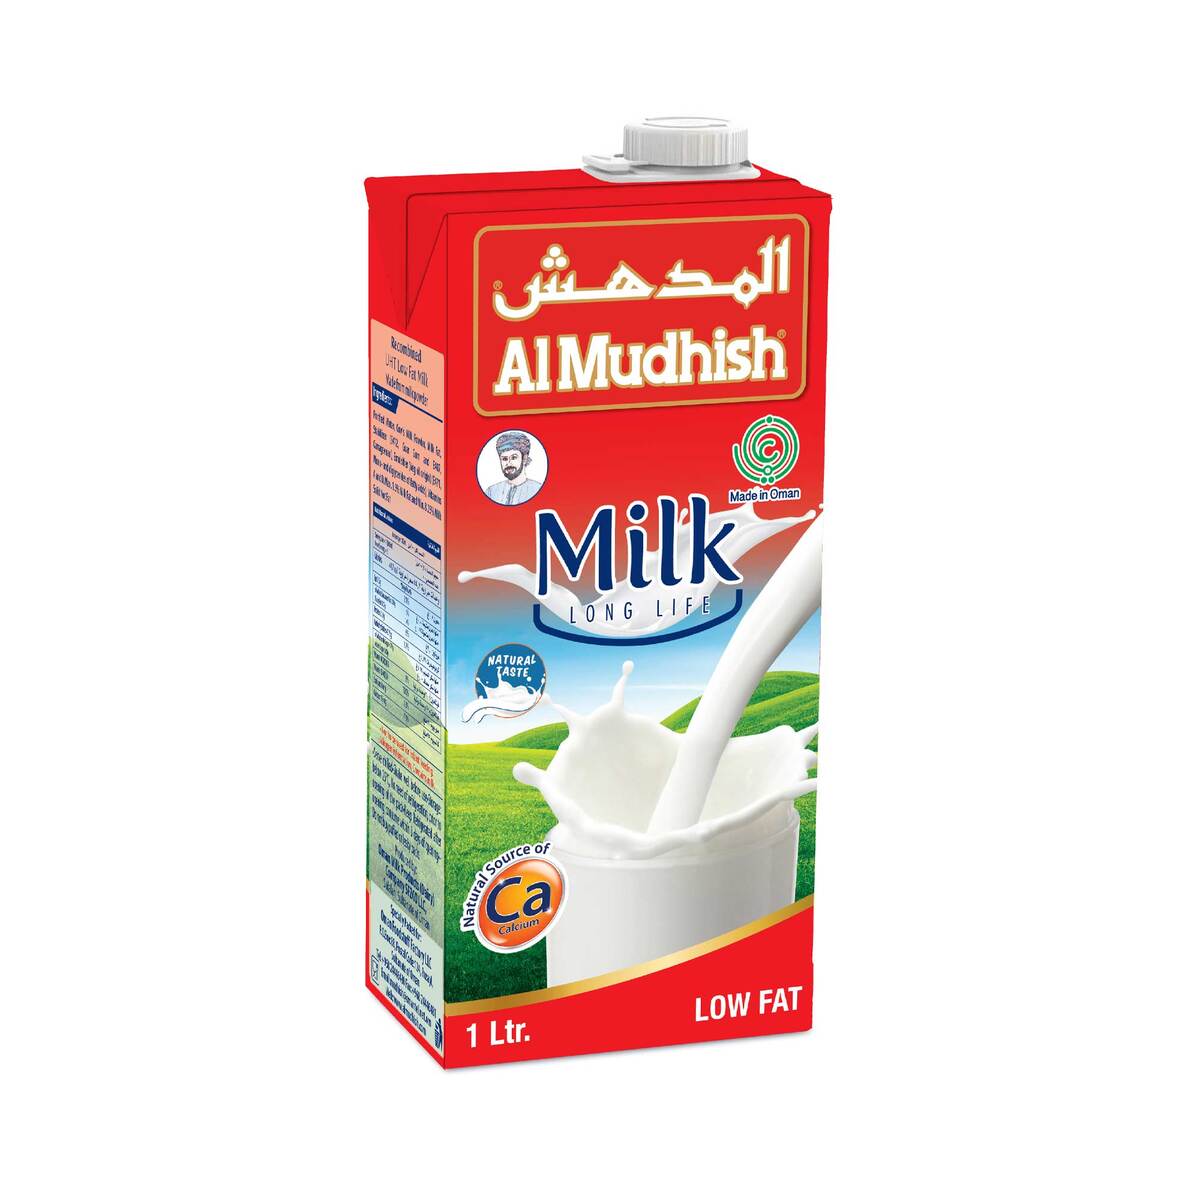 Al Mudhish Low Fat UHT Milk 4 x 1 Litre